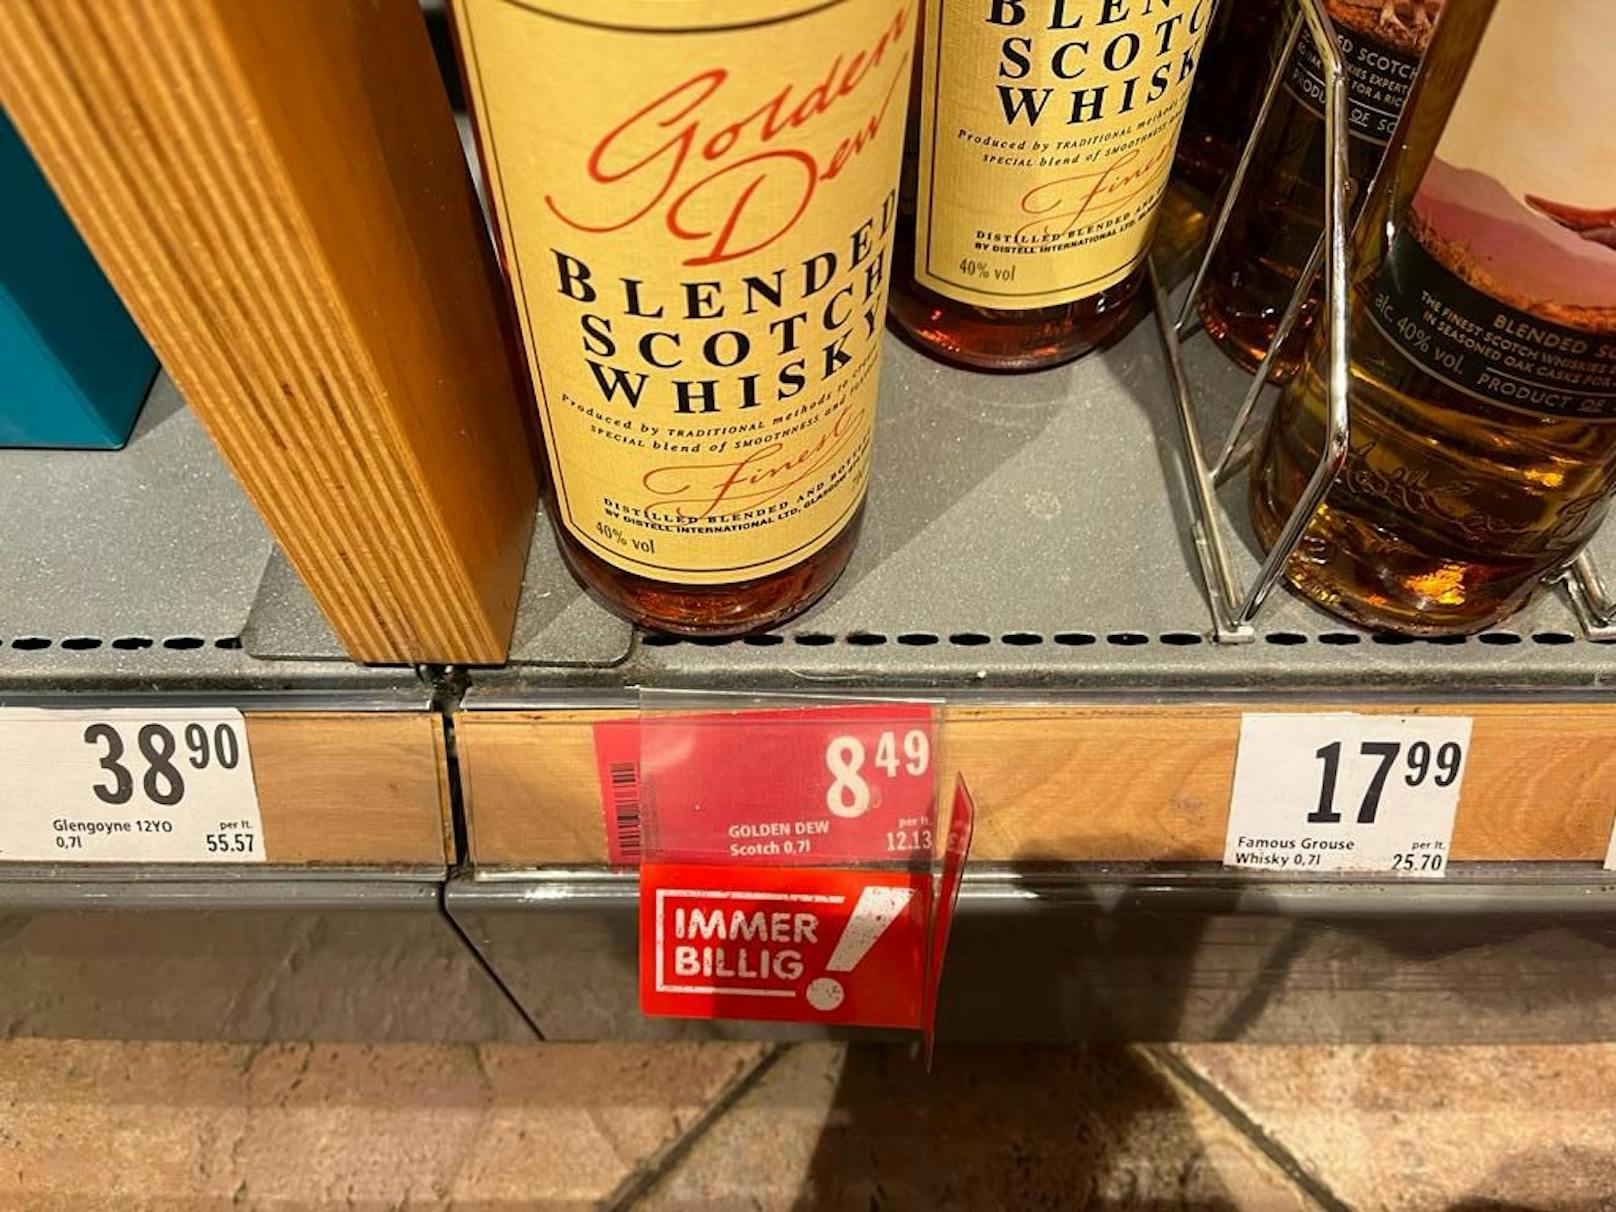 Ups! Billig-Whisky - vor einigen Wochen noch unter 8 Euro, jetzt 8,49 Euro. Das rote Ettiket heisst: "Immer billig". Dieser Whisky ist aber eher die Ausnahme.